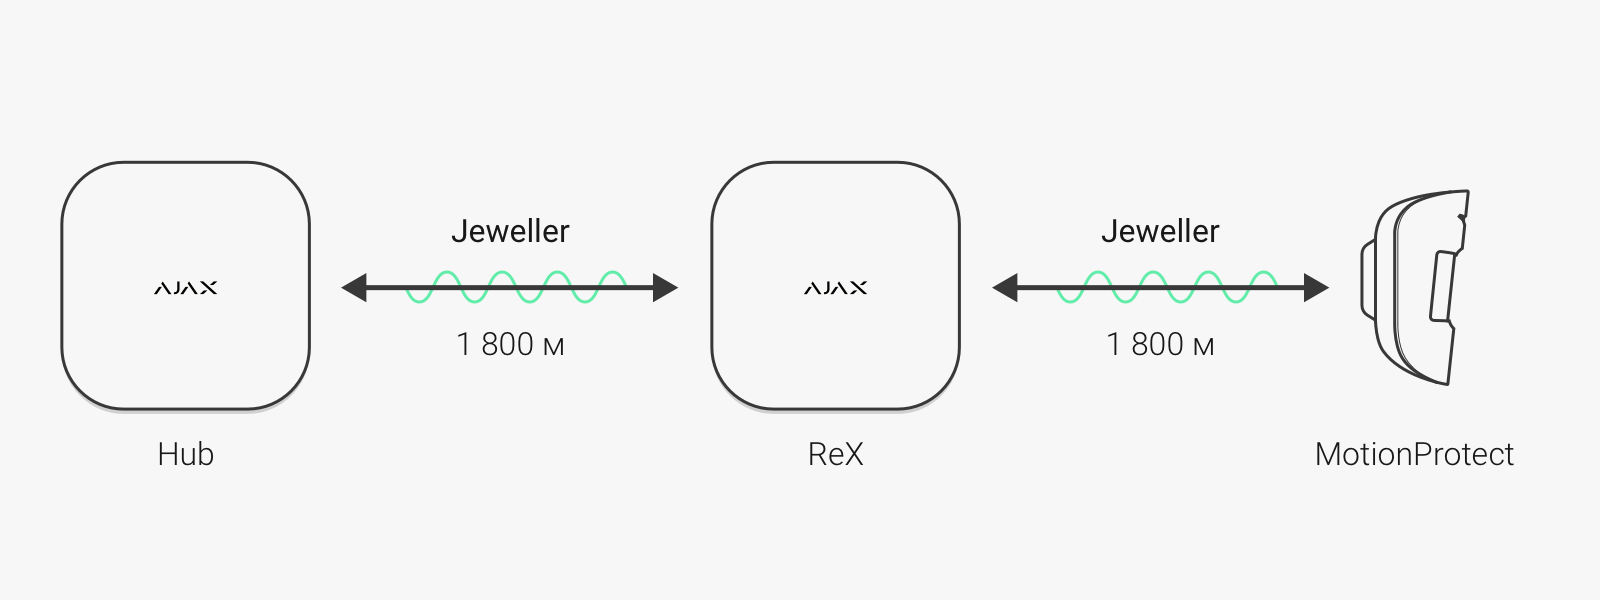 Ajax ReX: интеллектуальный ретранслятор сигнала централи, для обеспечения безопасности больших объектов - Фото 1 - Фото 2 - Фото 3